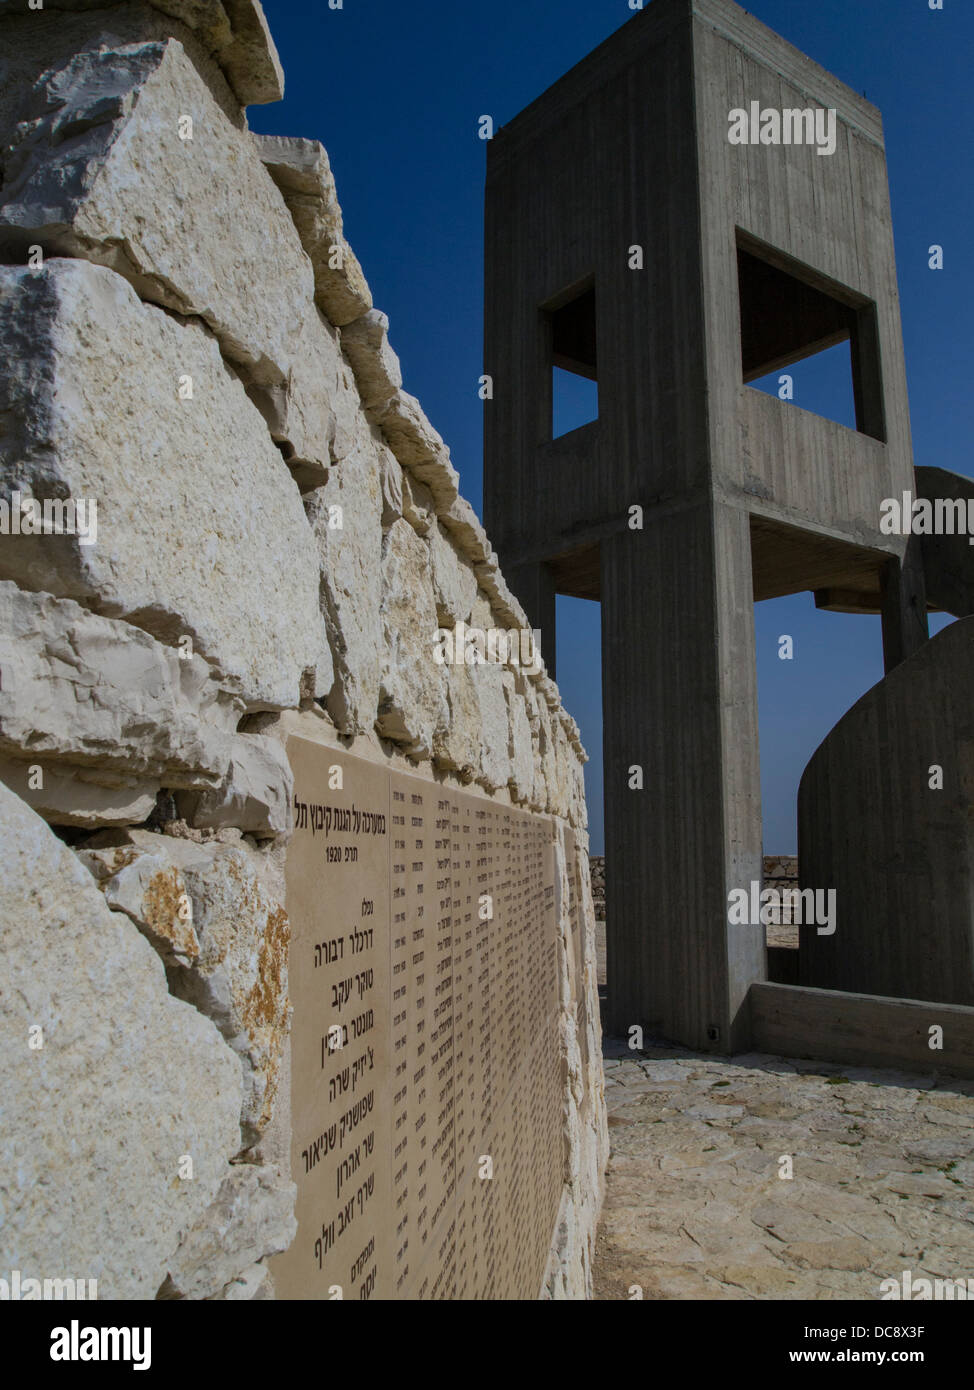 Cavenago di Brianza, Italia. Il memoriale dei caduti dal movimento Kibbutzim. Foto Stock